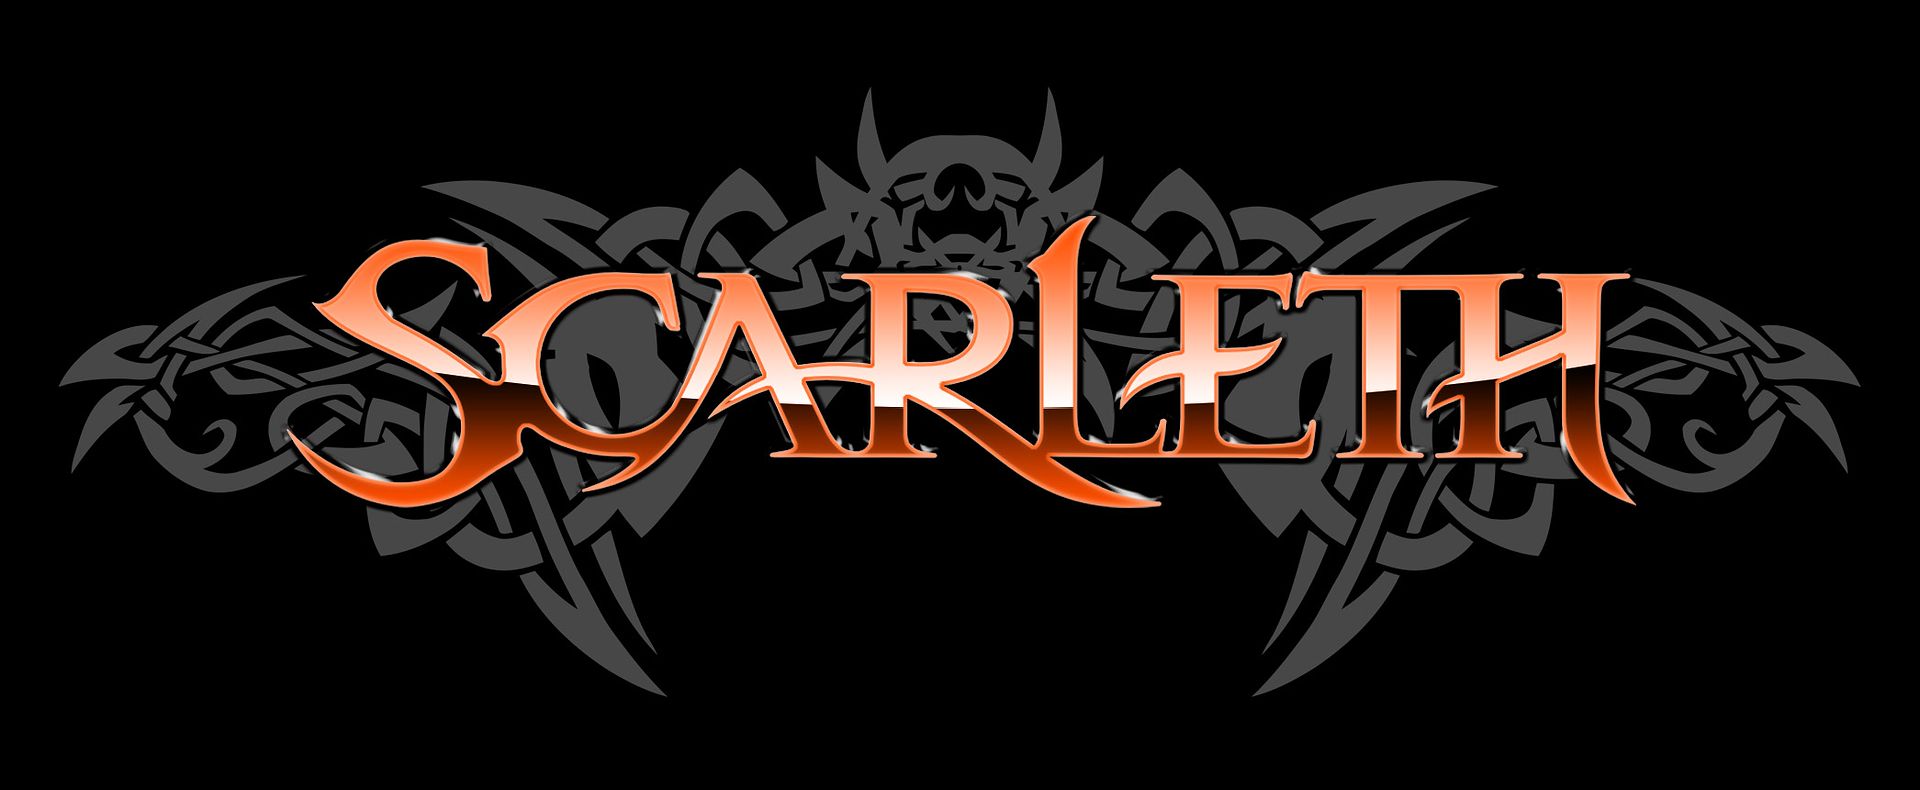 Scarleth (logo)